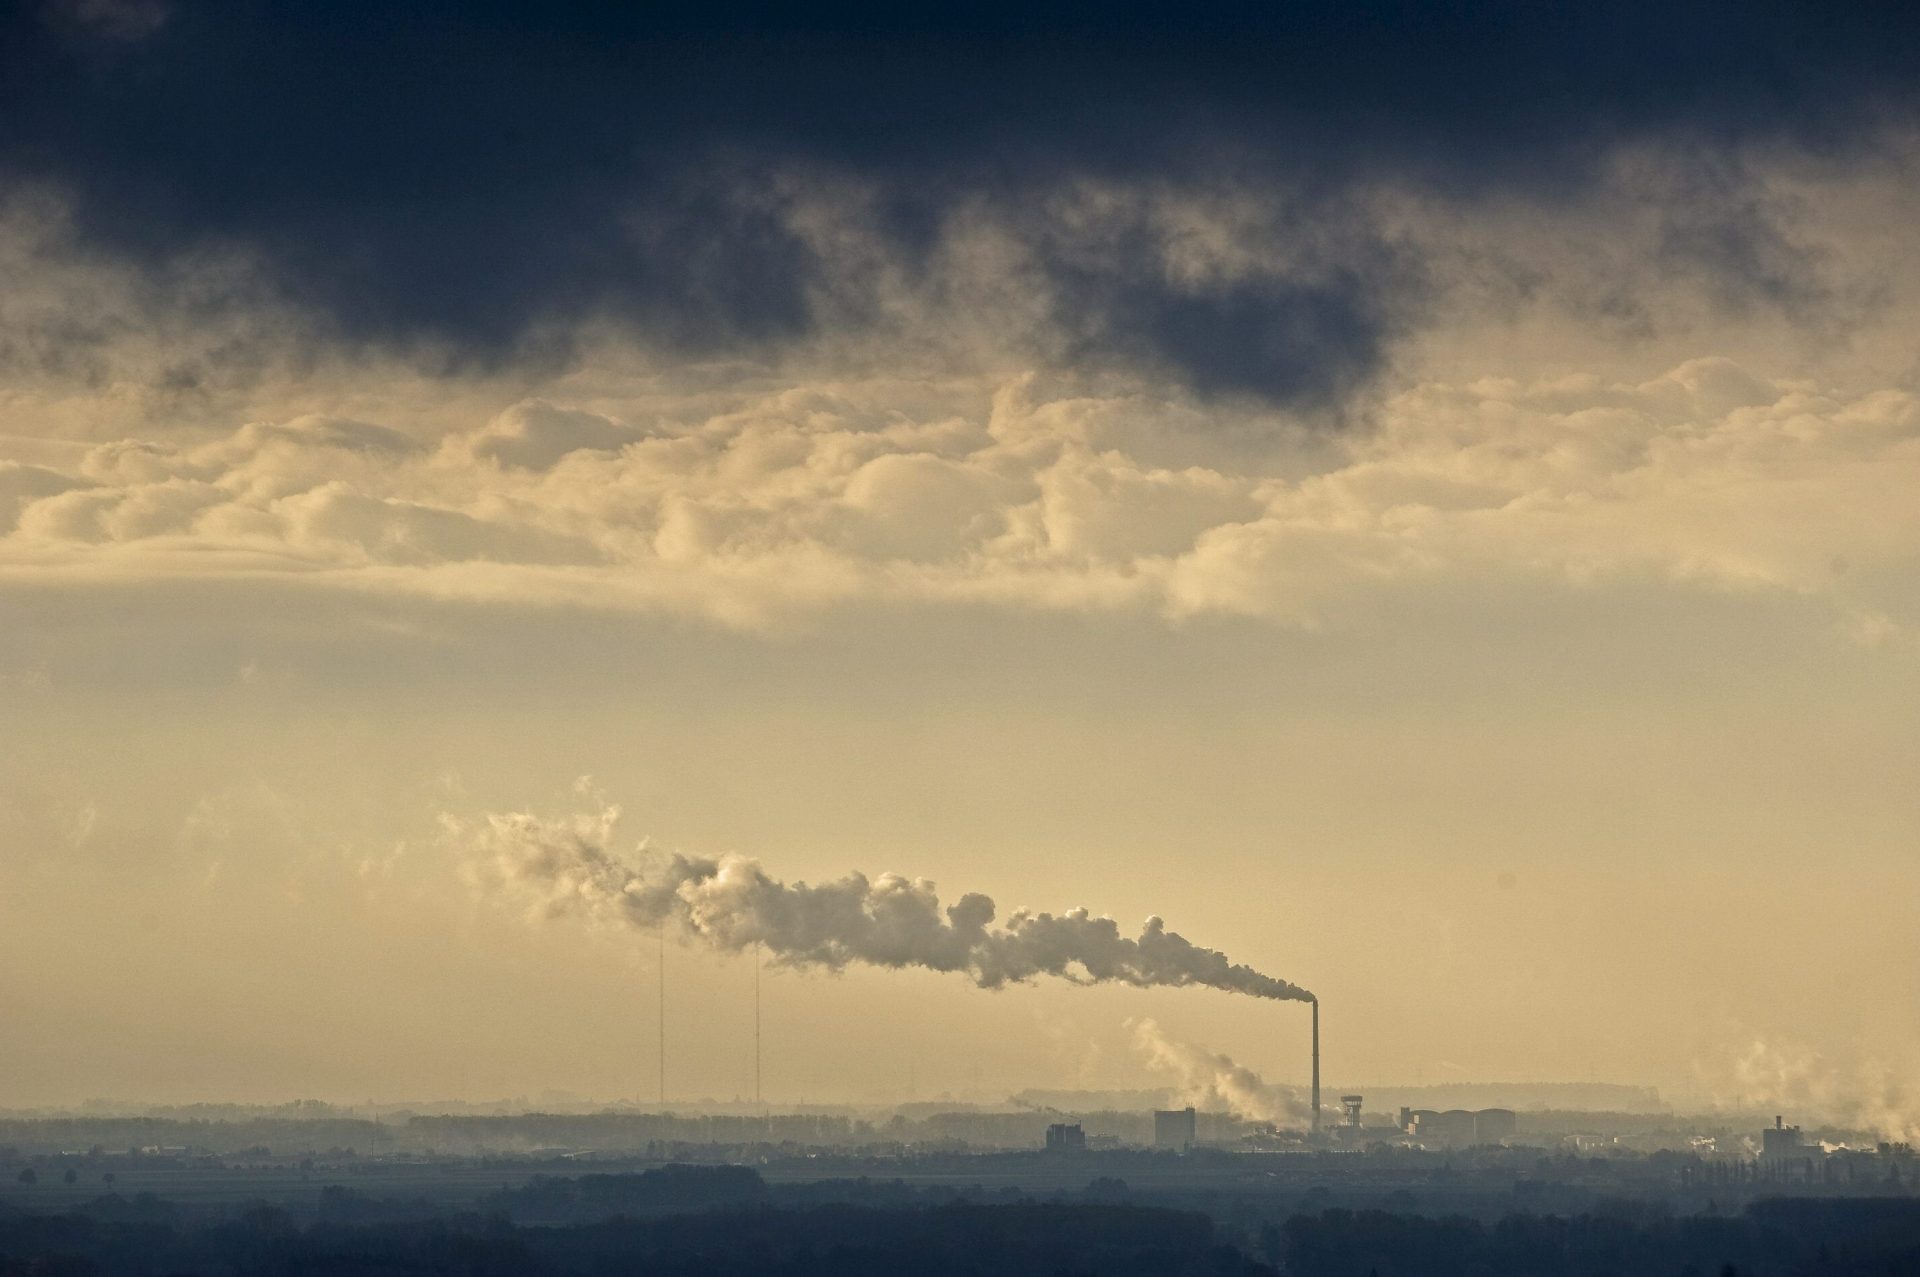 REG005. PLATTLING (ALEMANIA), 21/10/2010.- El humo de una chimenea de una fábrica de azúcar cubre el cielo de Plattling en Alemania hoy, jueves, 21 de octubre de 2010. EFE/Armin Weigel